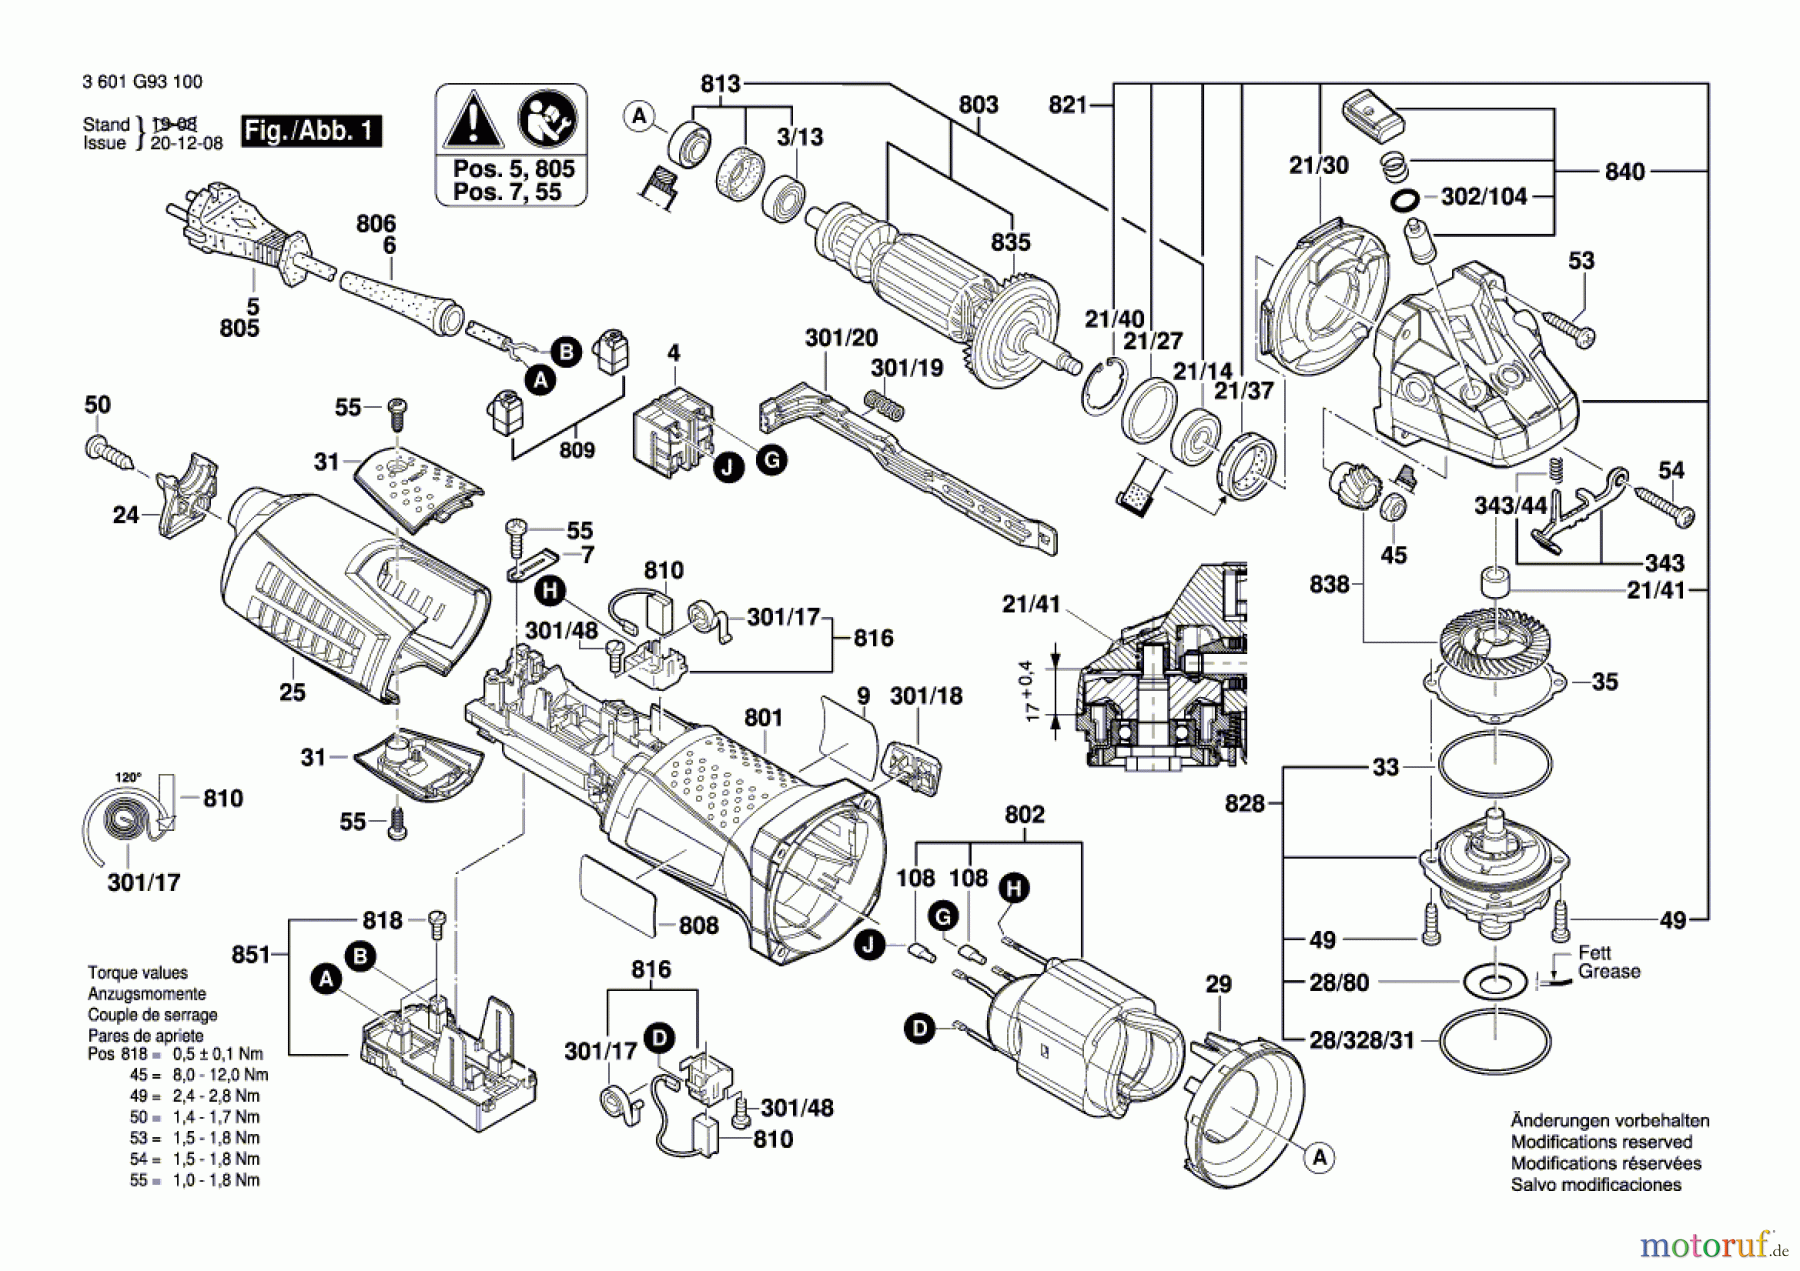  Bosch Werkzeug Winkelschleifer GWS 15-125 CIX Seite 1